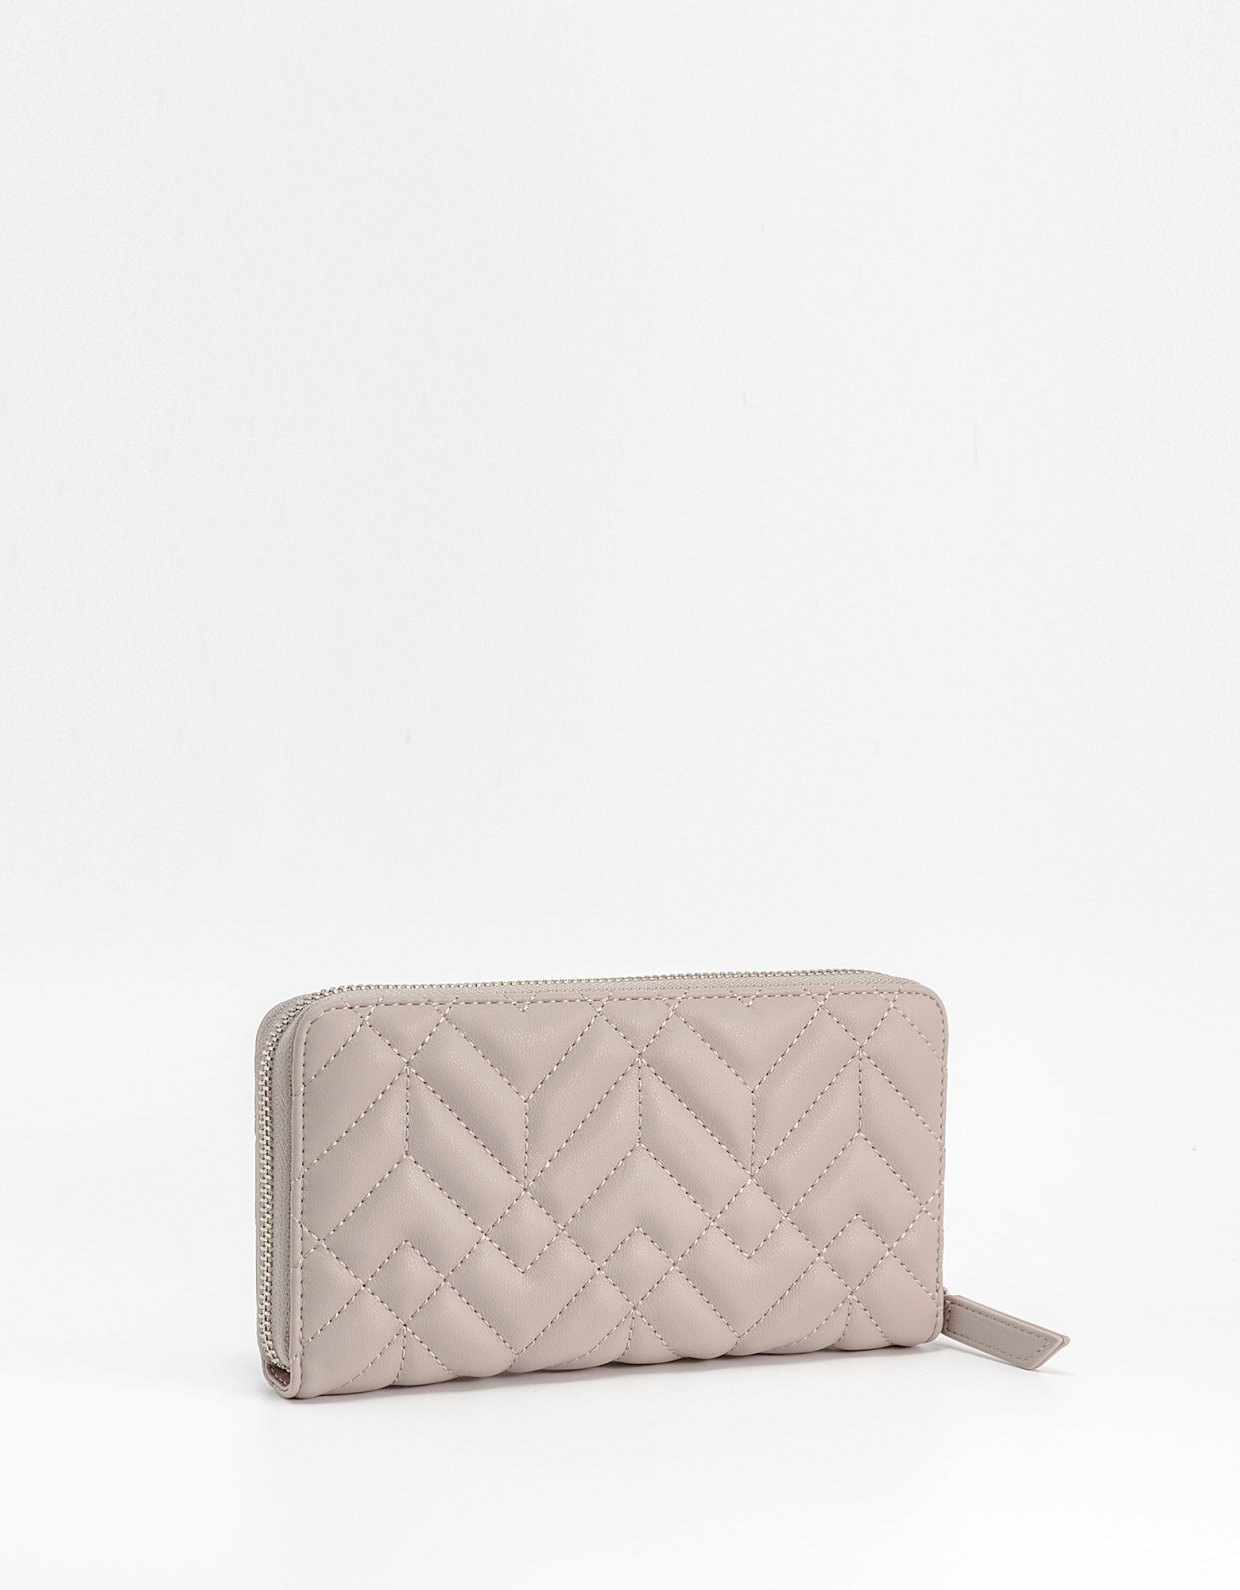 By Byblos Eleanor zip around wallet powder pink